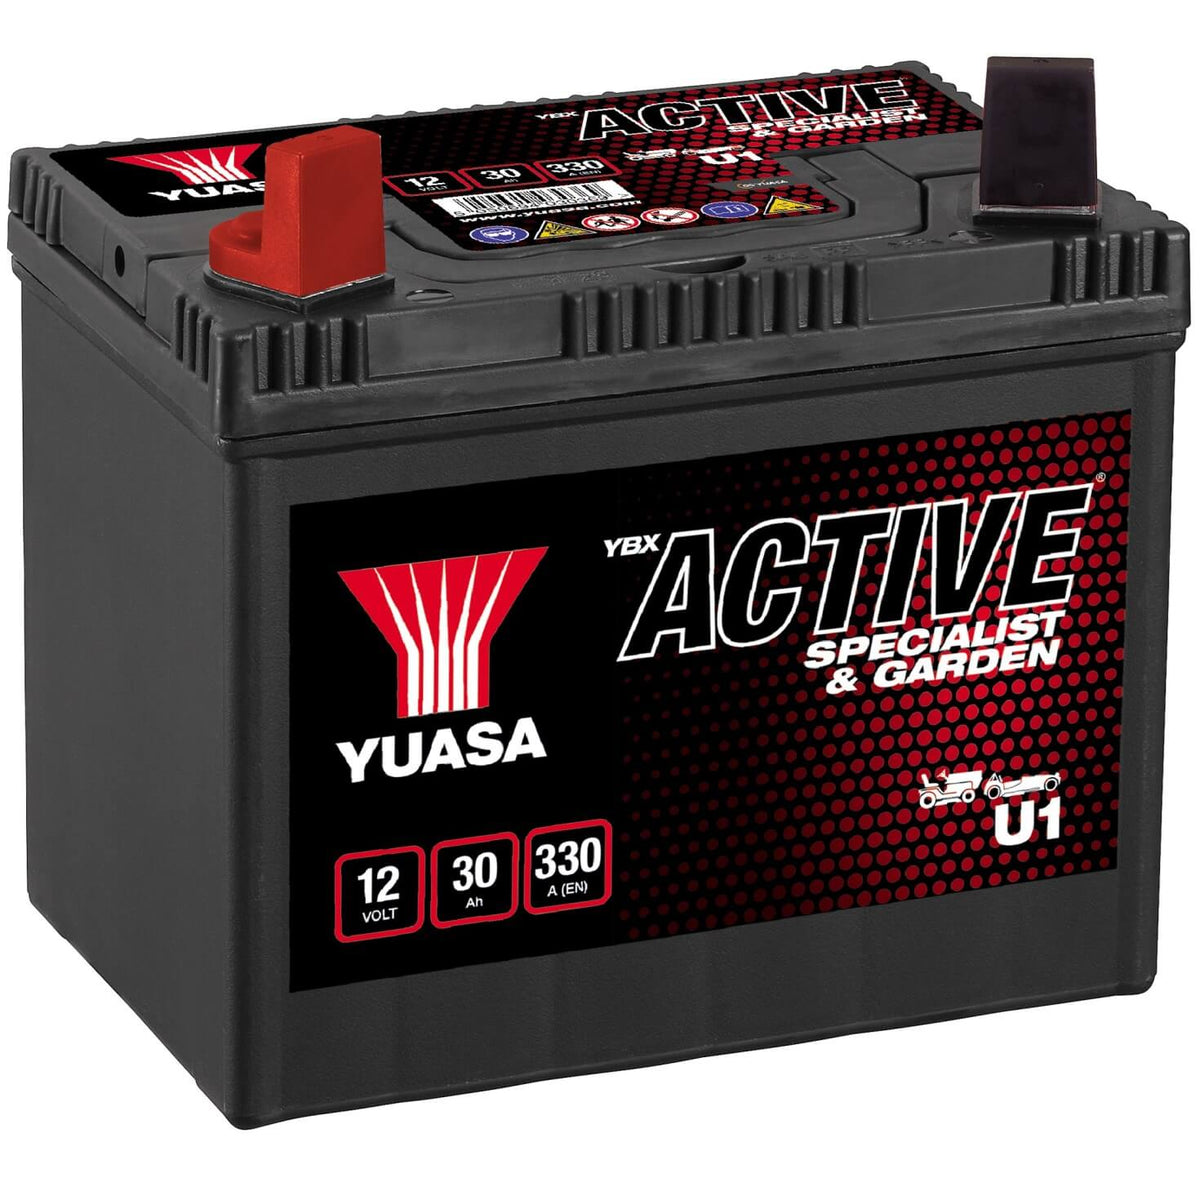 Rasentraktor Batterie YUASA Specialist and Garden U1 12V 30Ah Seite links